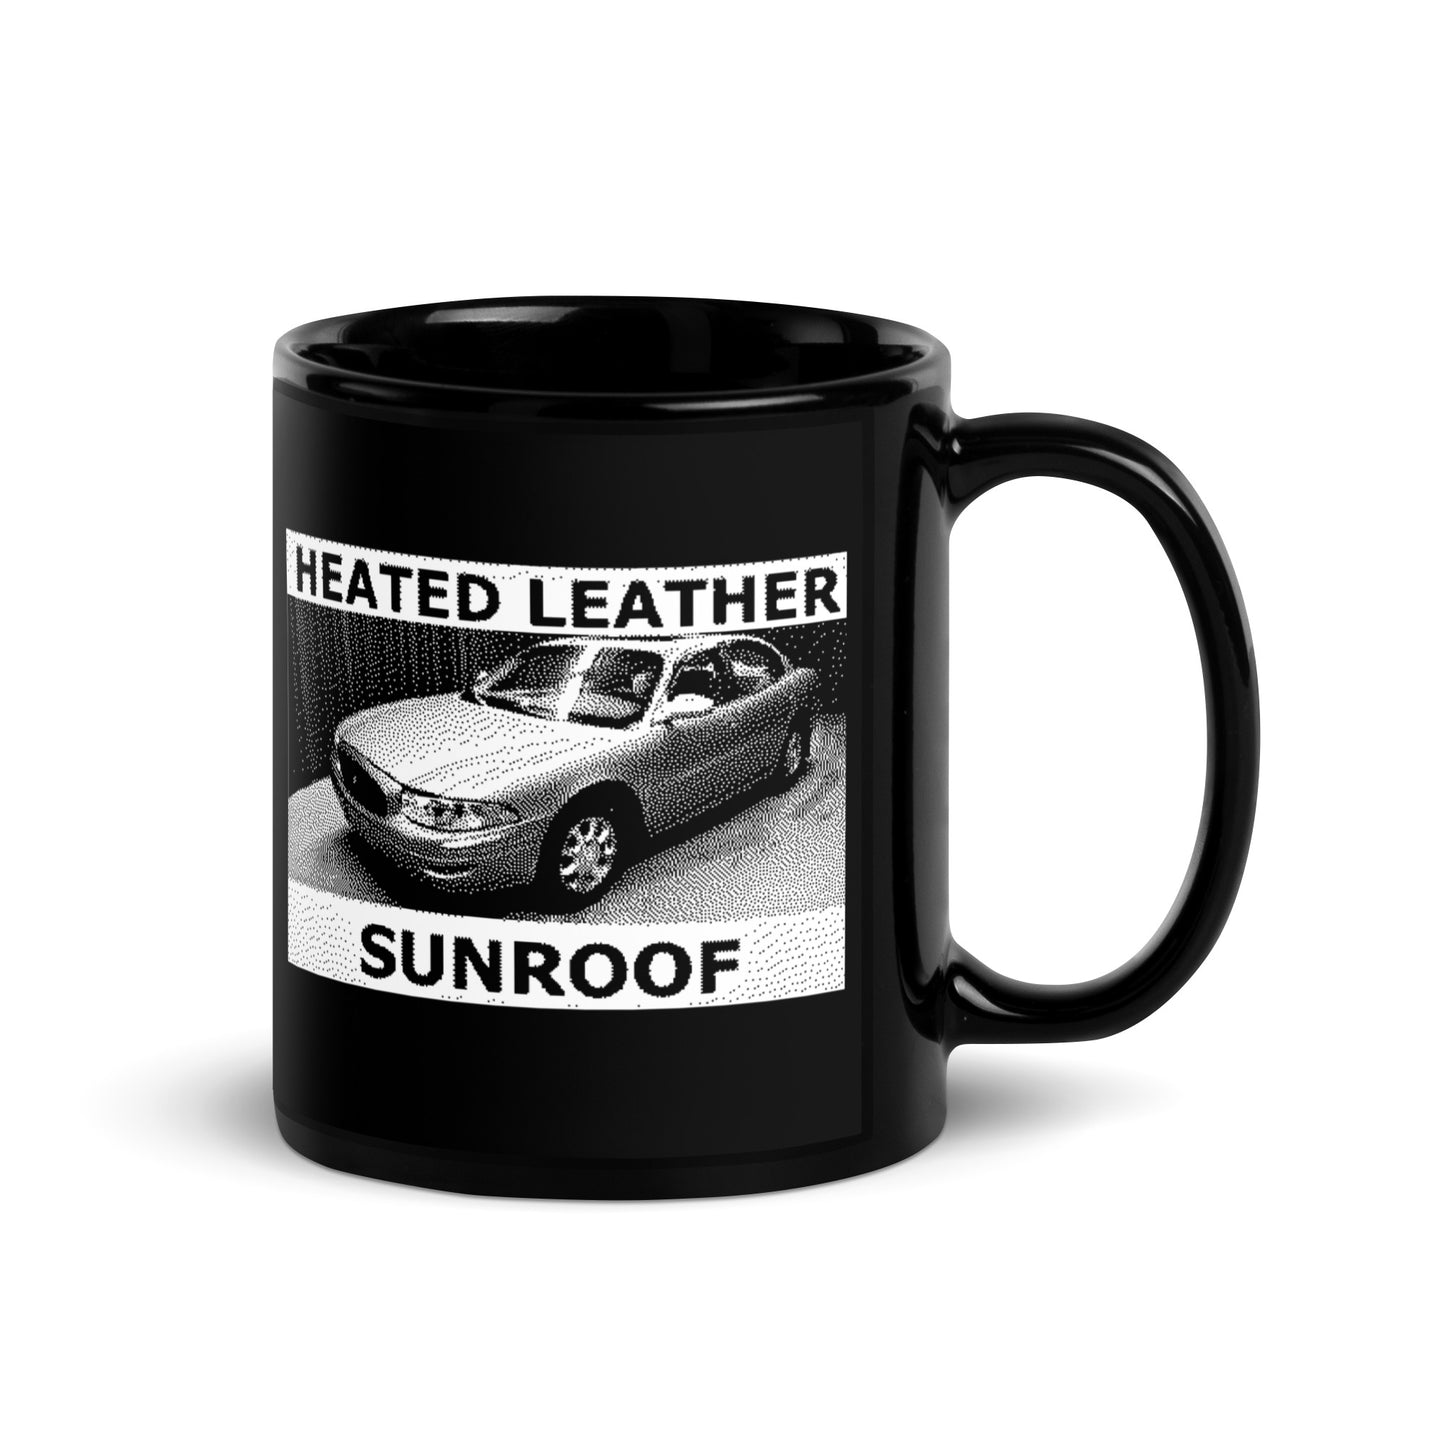 Heated Leather Sunroof Mug